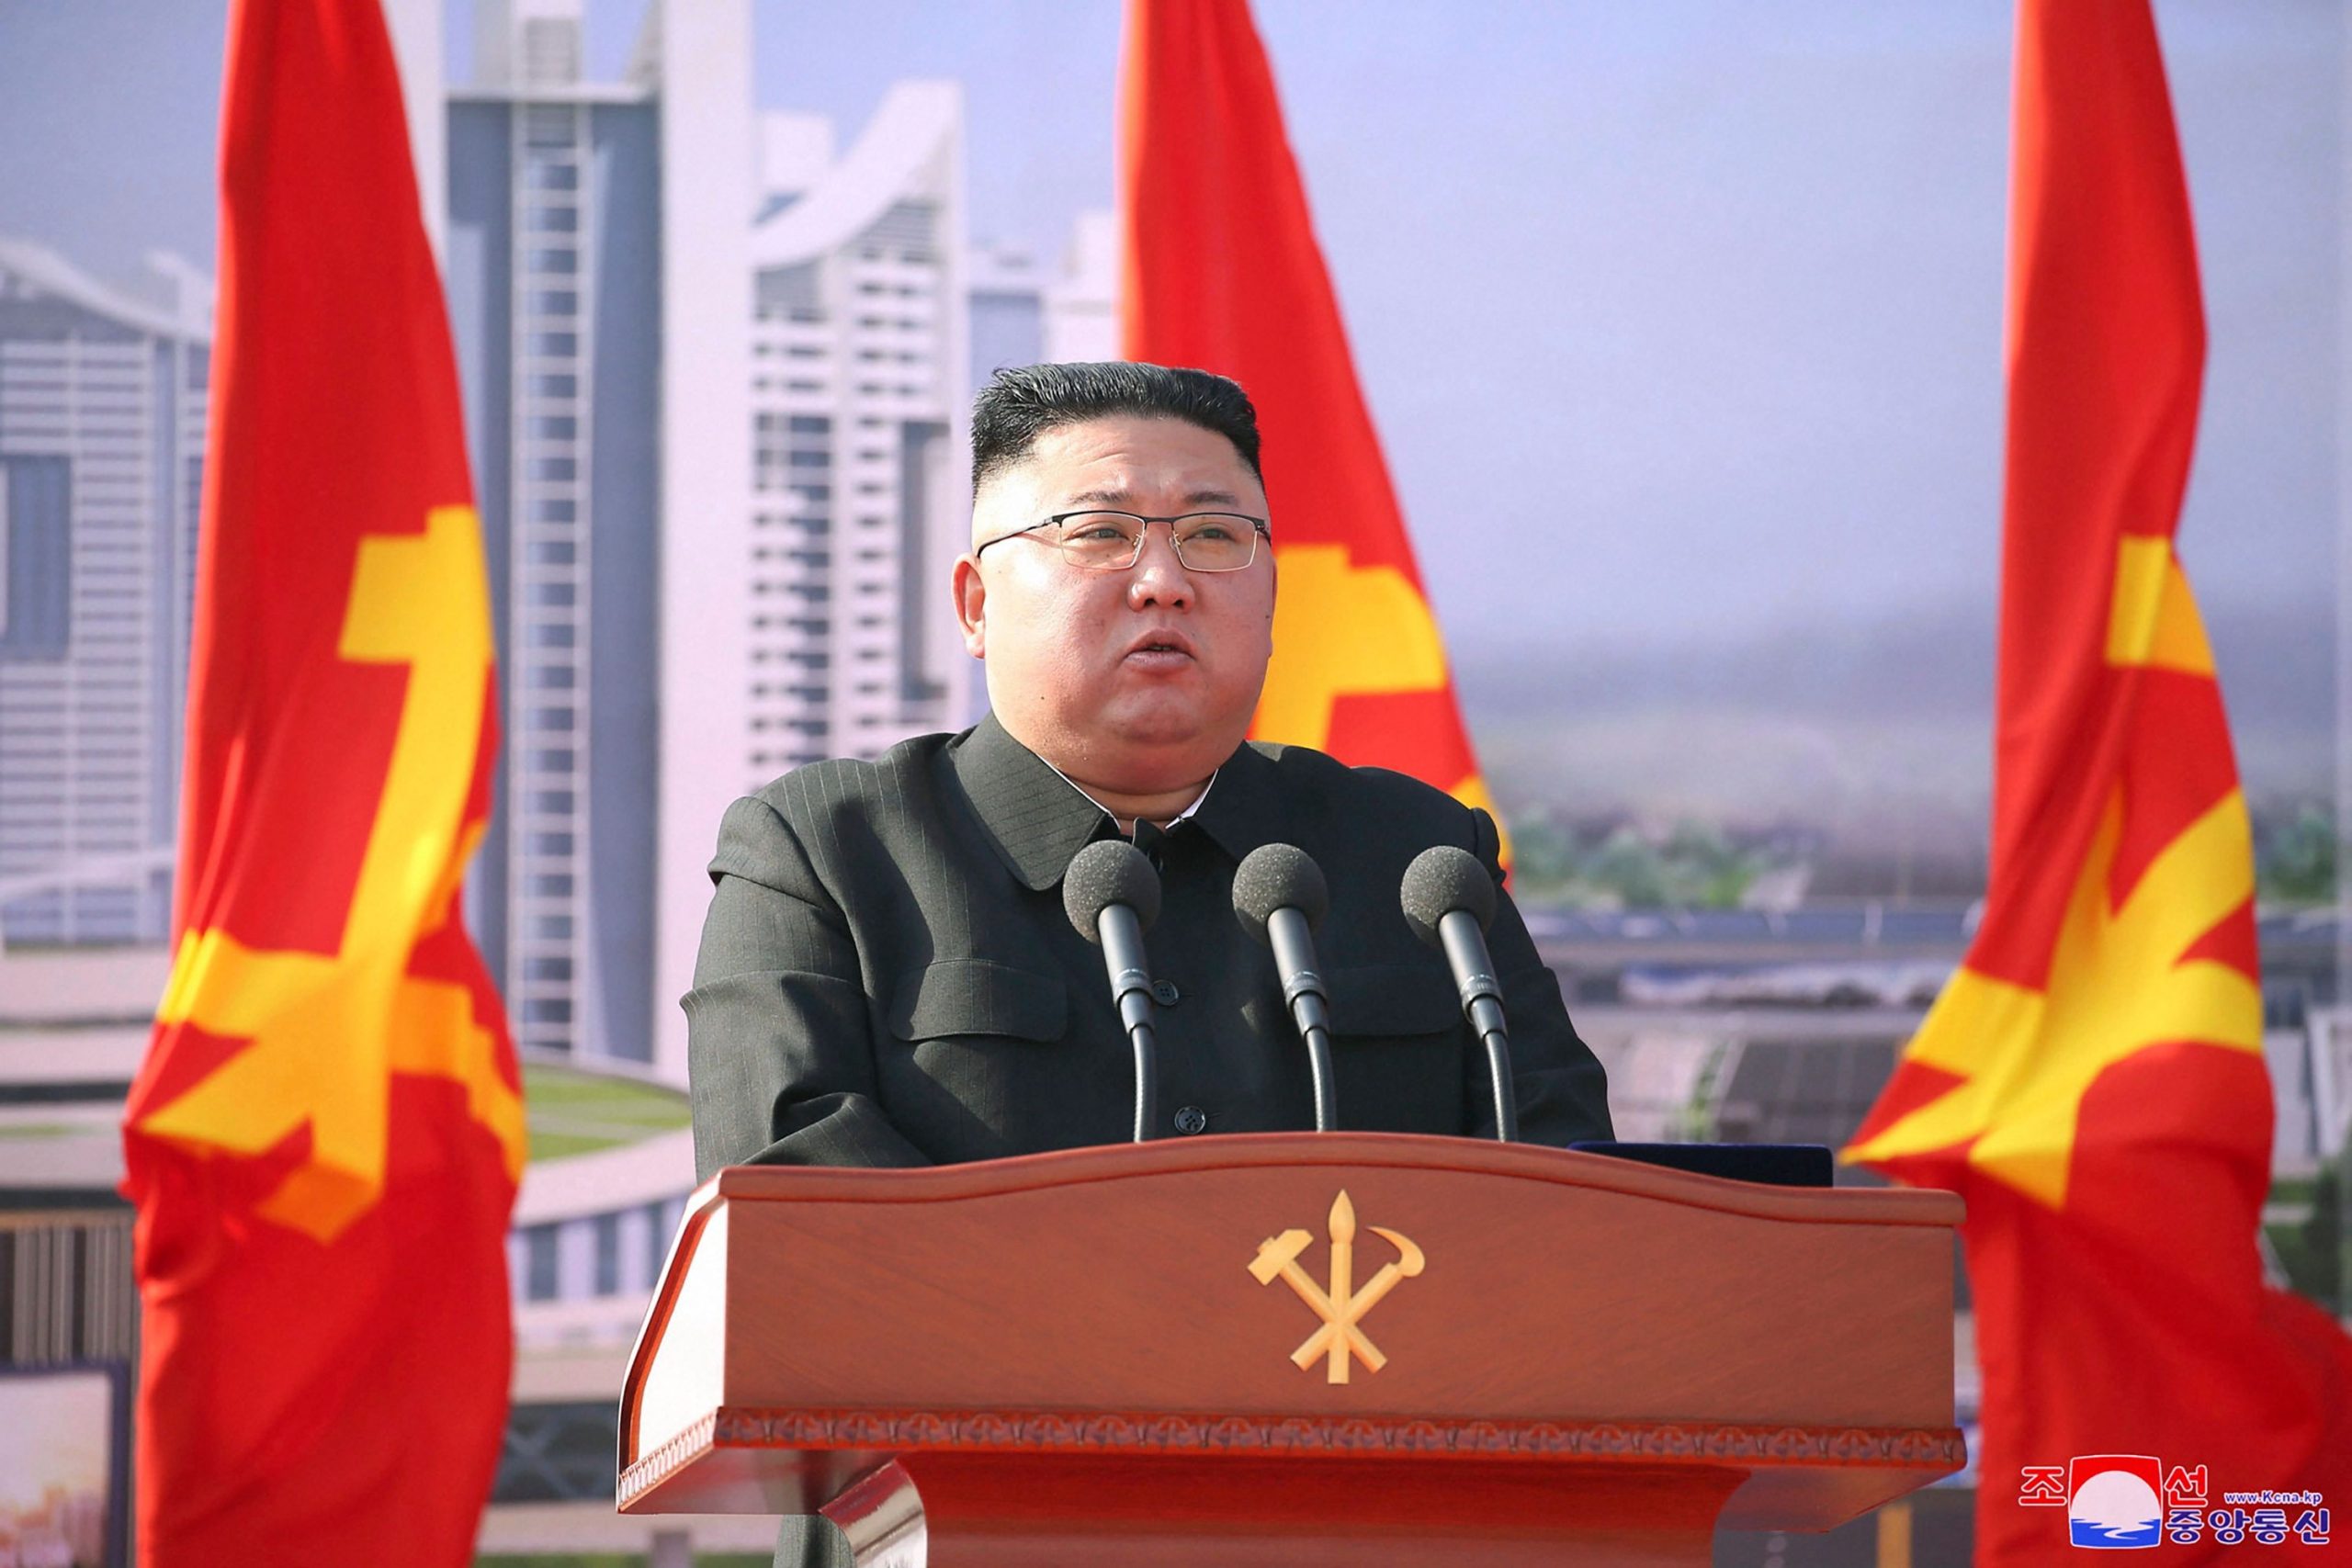 North Korea tests 2 missiles after top US officials visit region